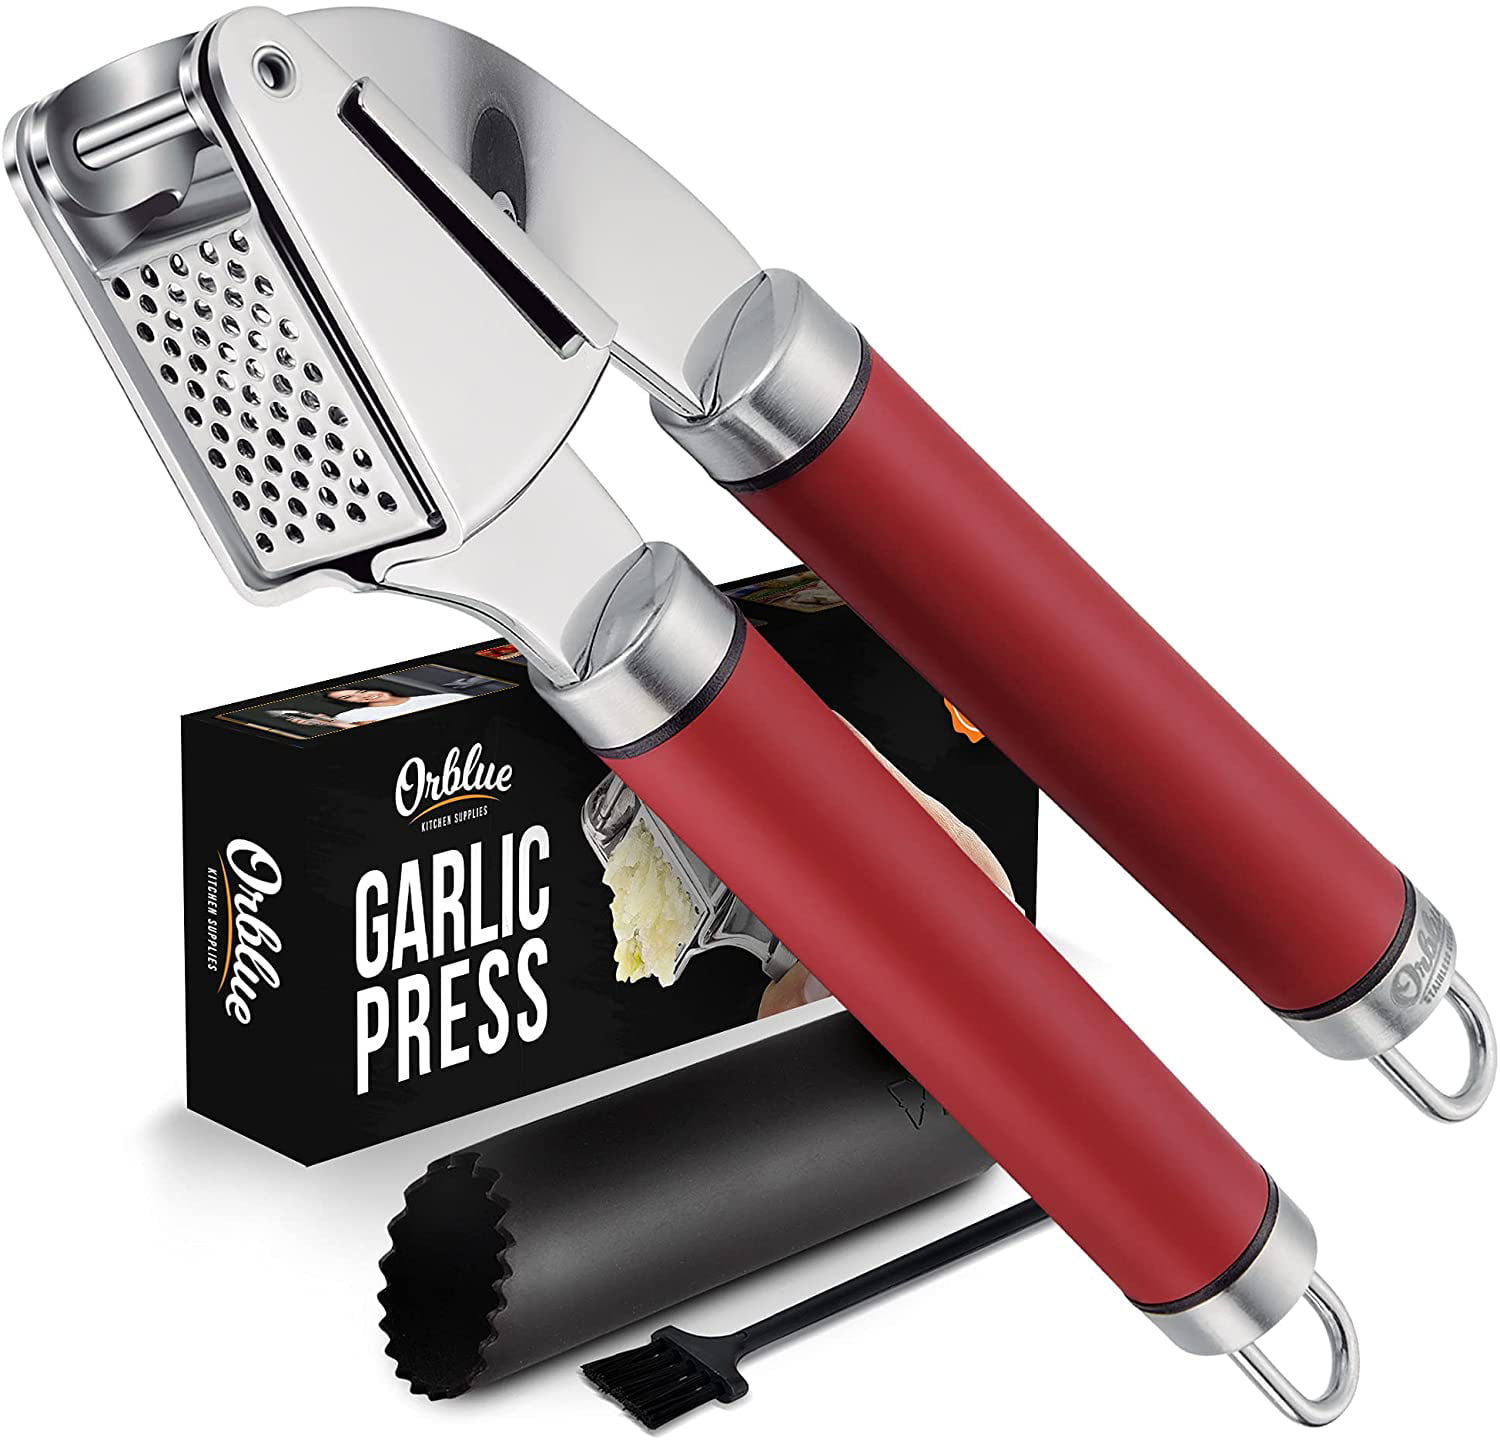 Muddler – The Garlic Press, Inc.